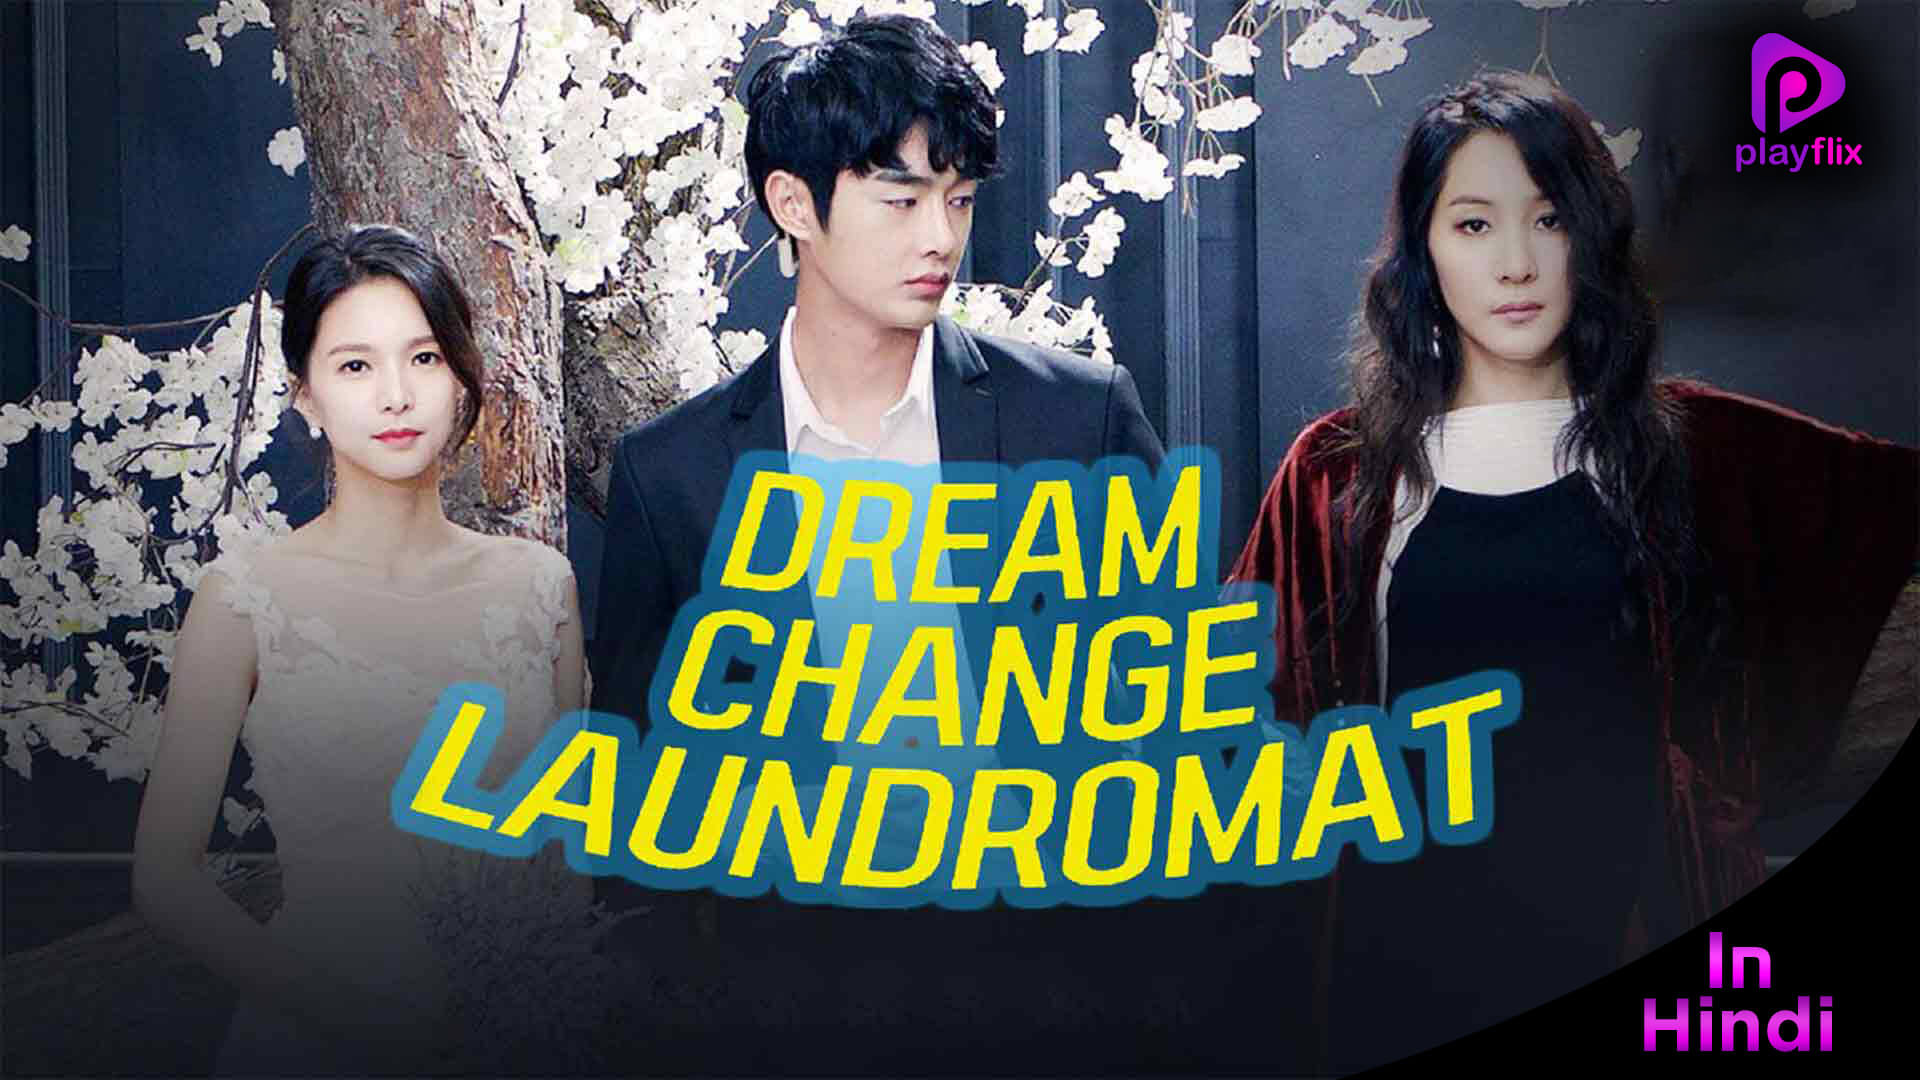 Dream Change Laundromat